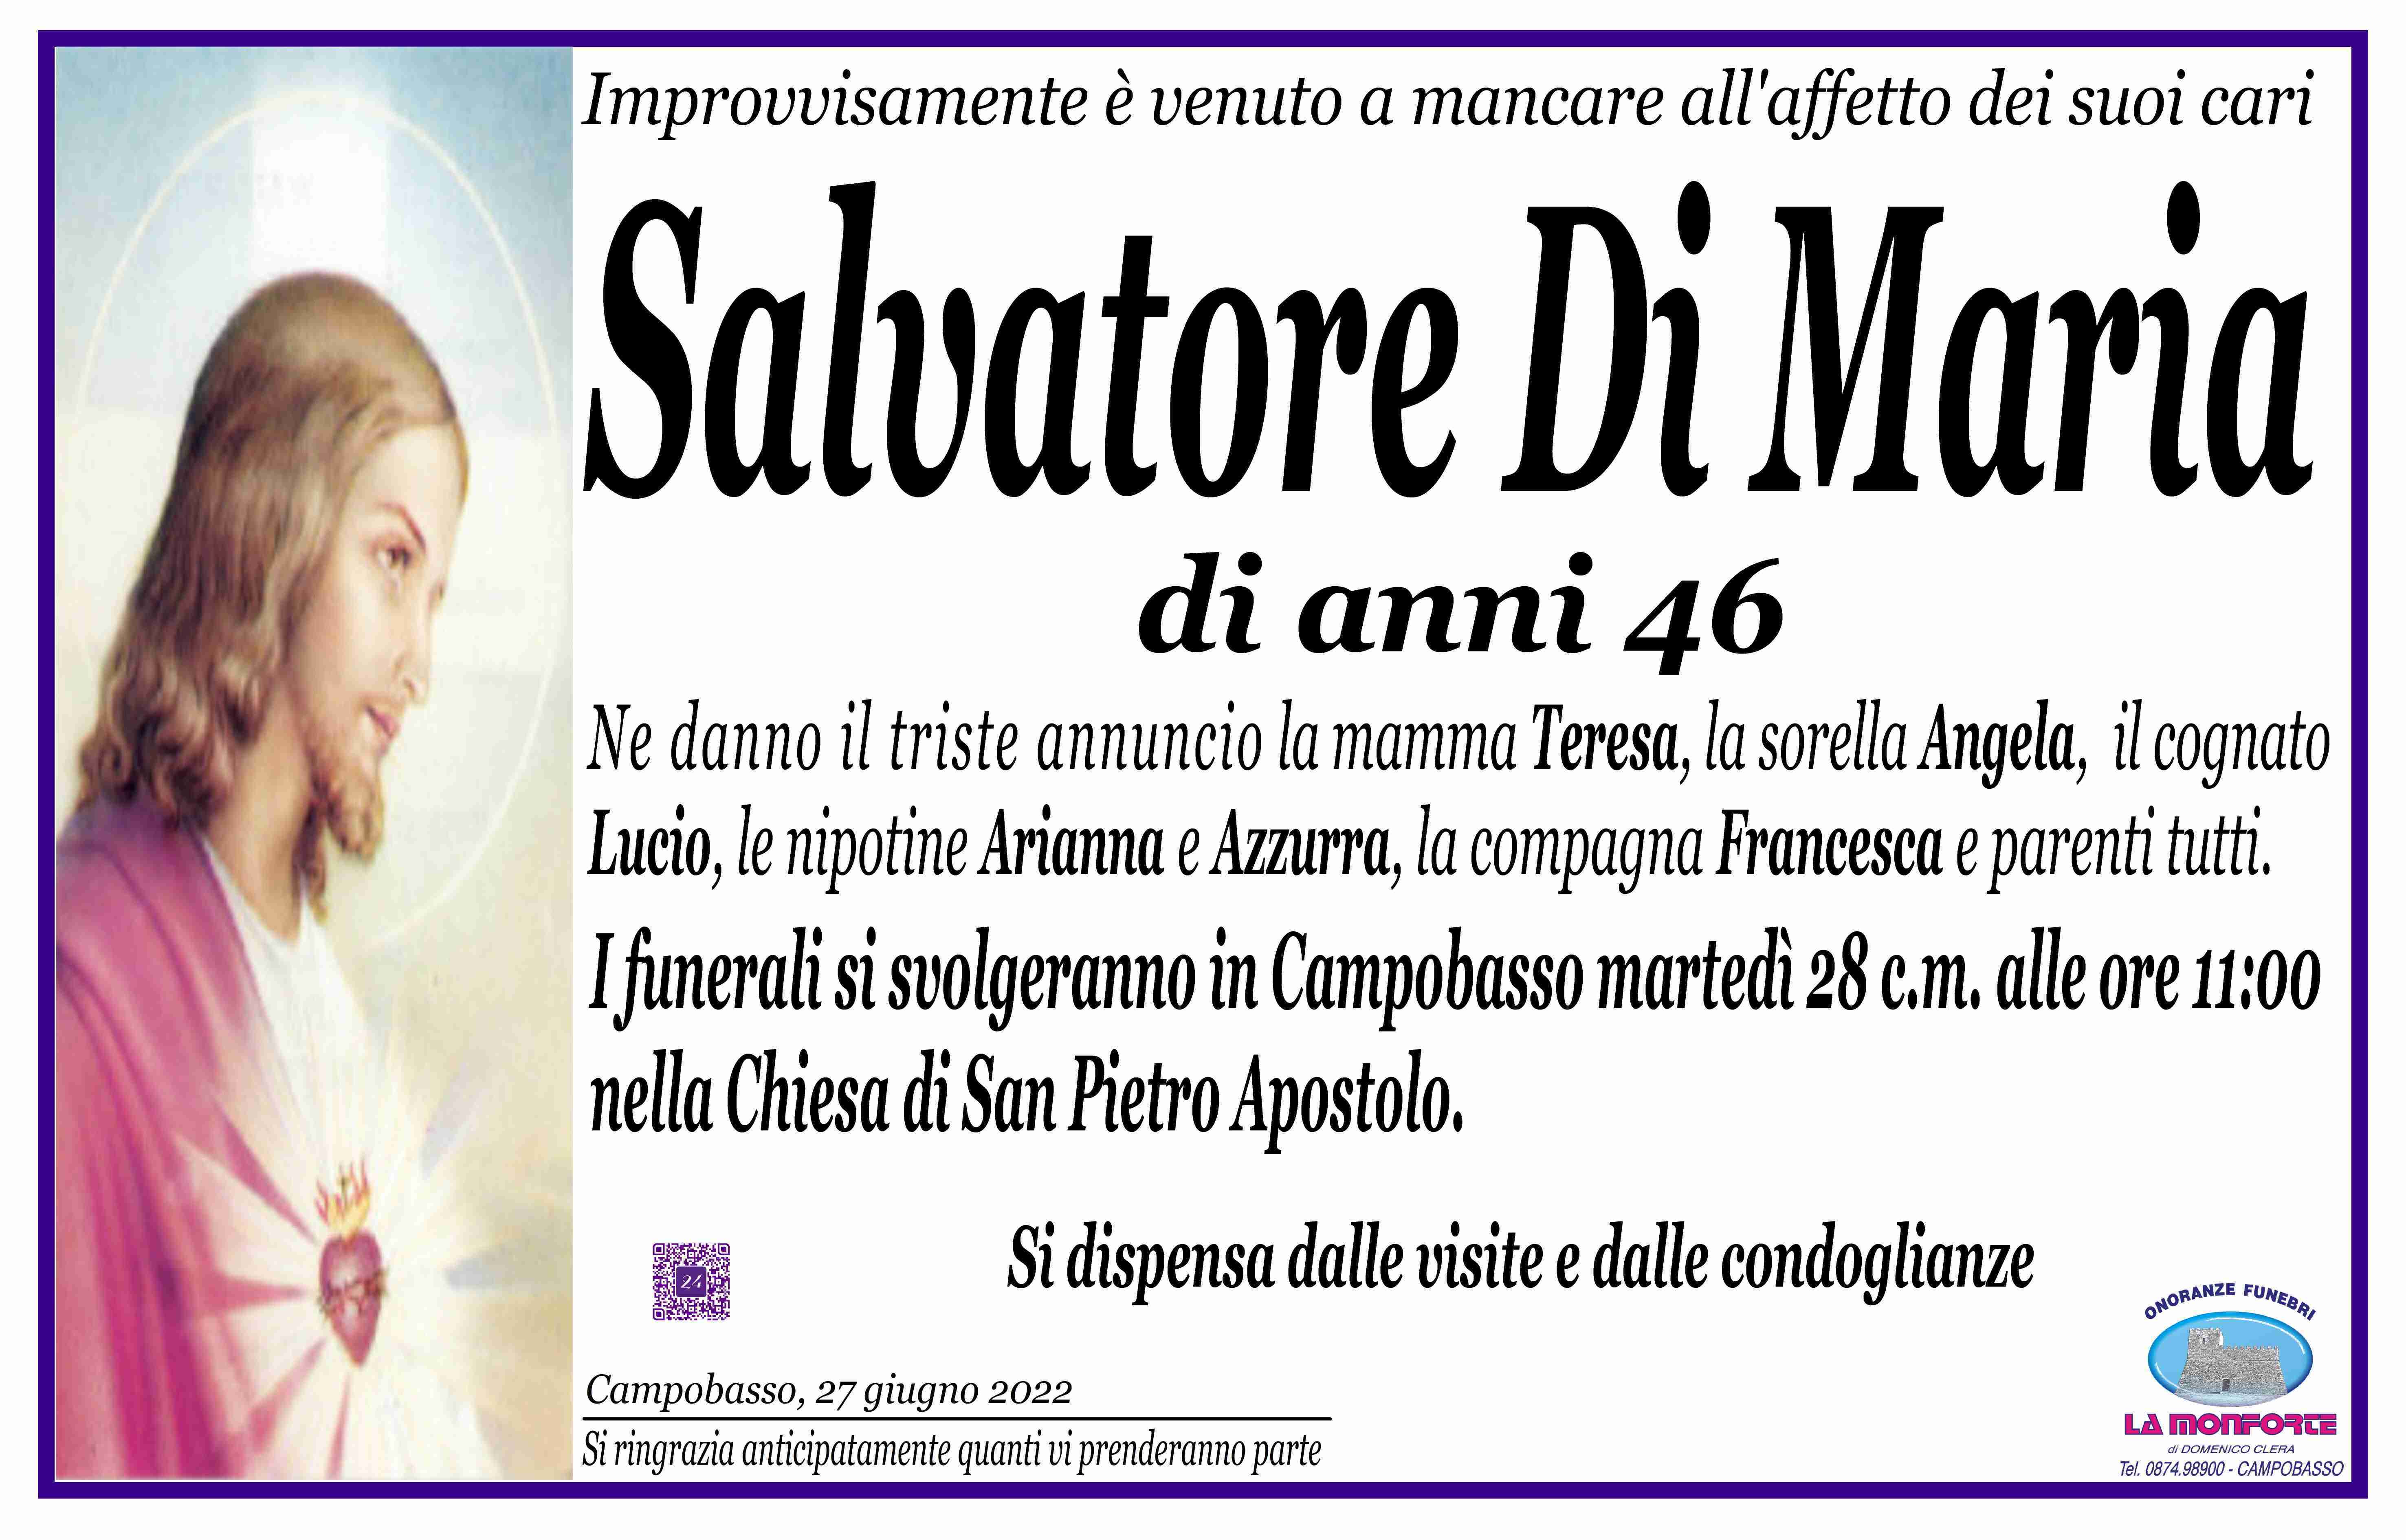 Salvatore Di Maria